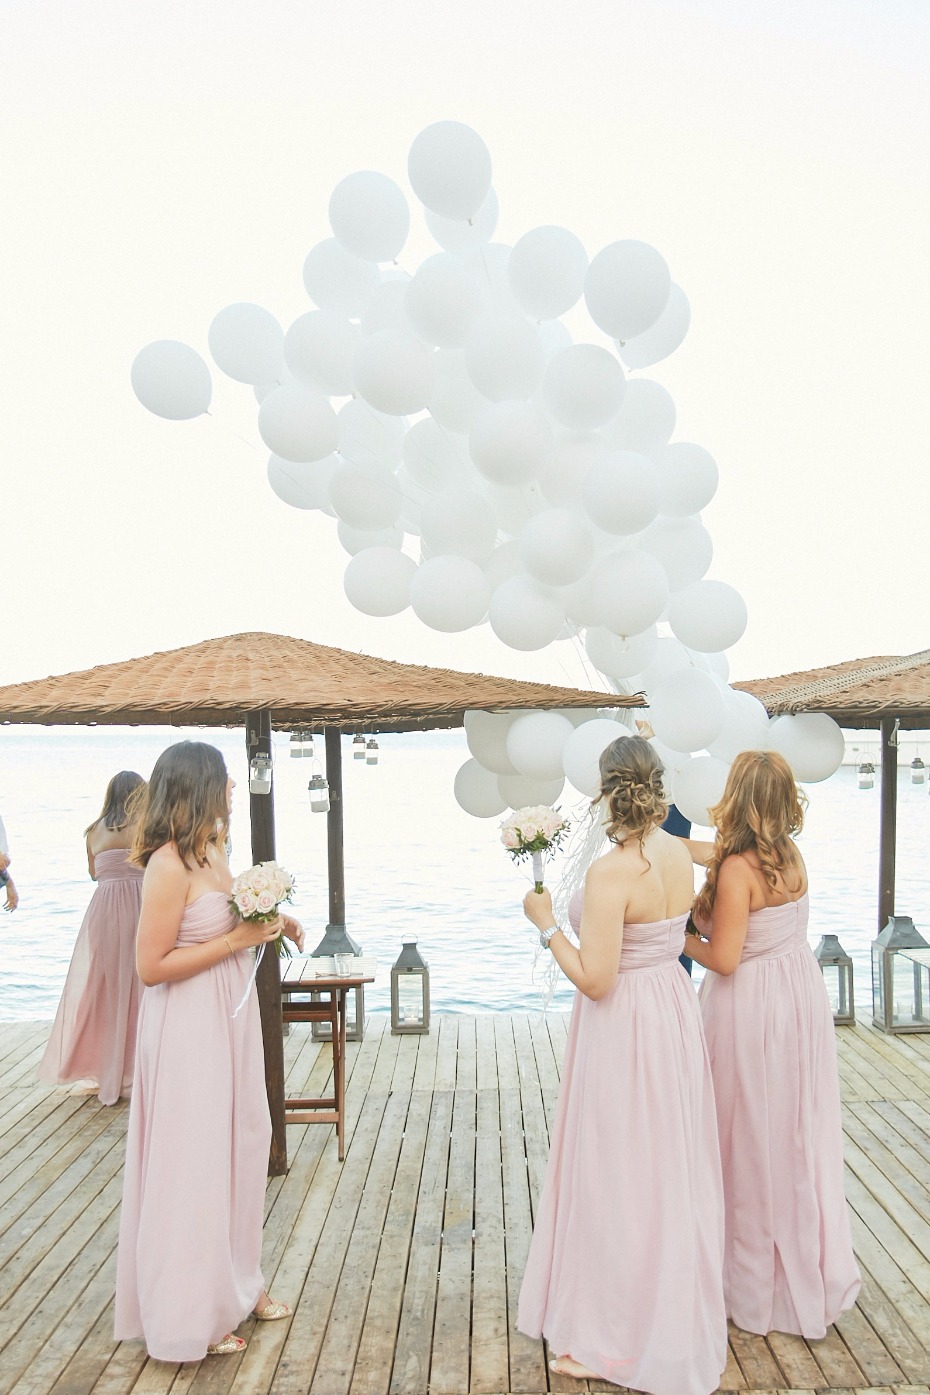 white wedding balloon release